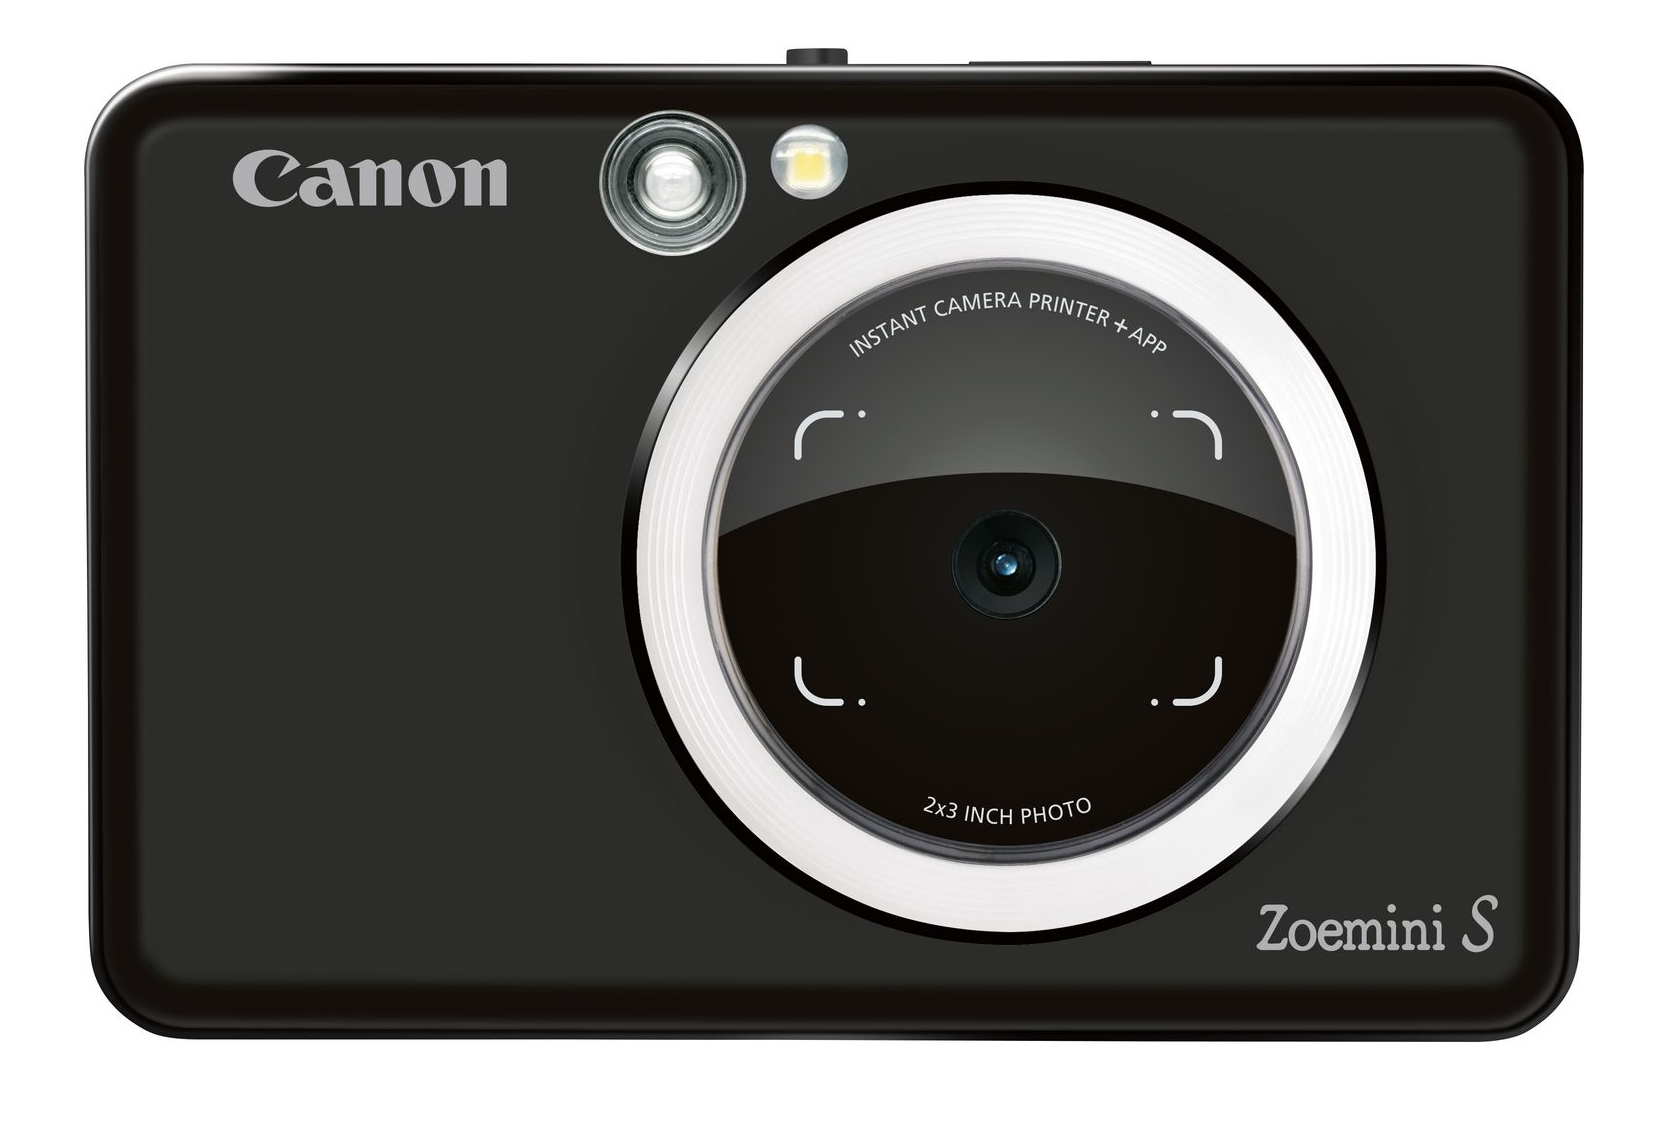 كاميرا بطابعة فورية زوي ميني أس لون أسود من كانون